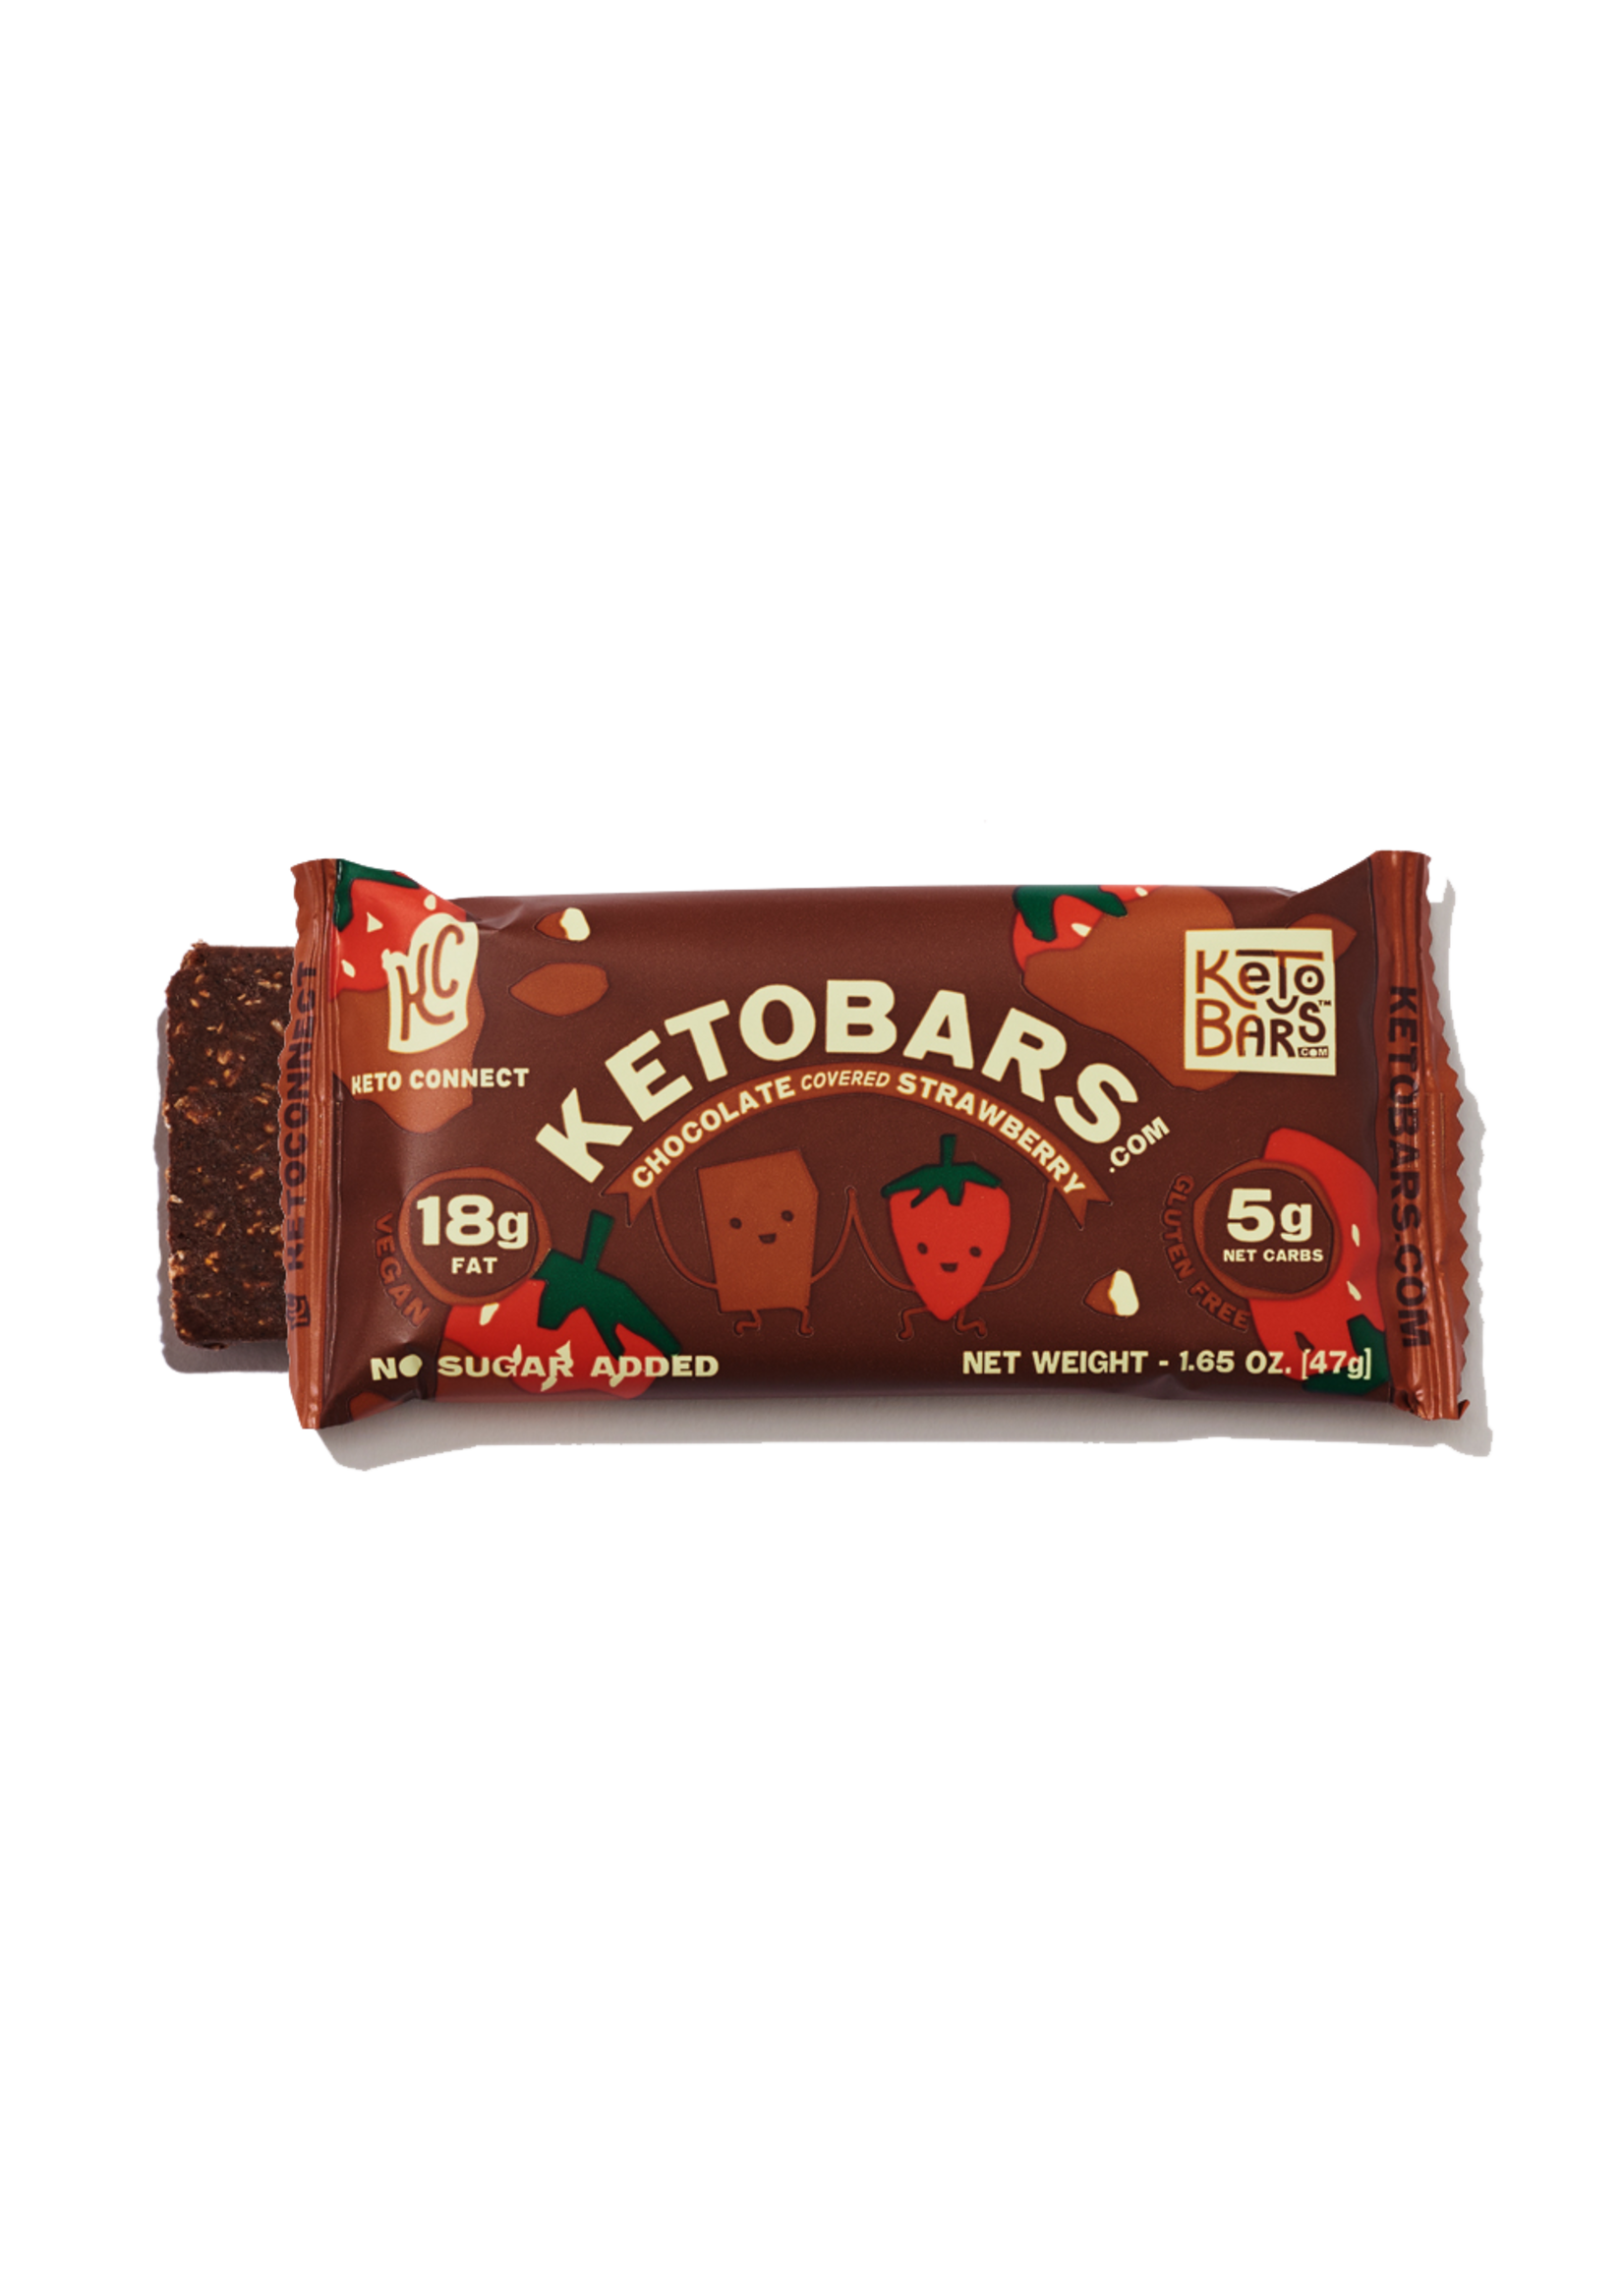 Ketobars.com Ketobars.com- Chocolate CoveredStraberry (Single)